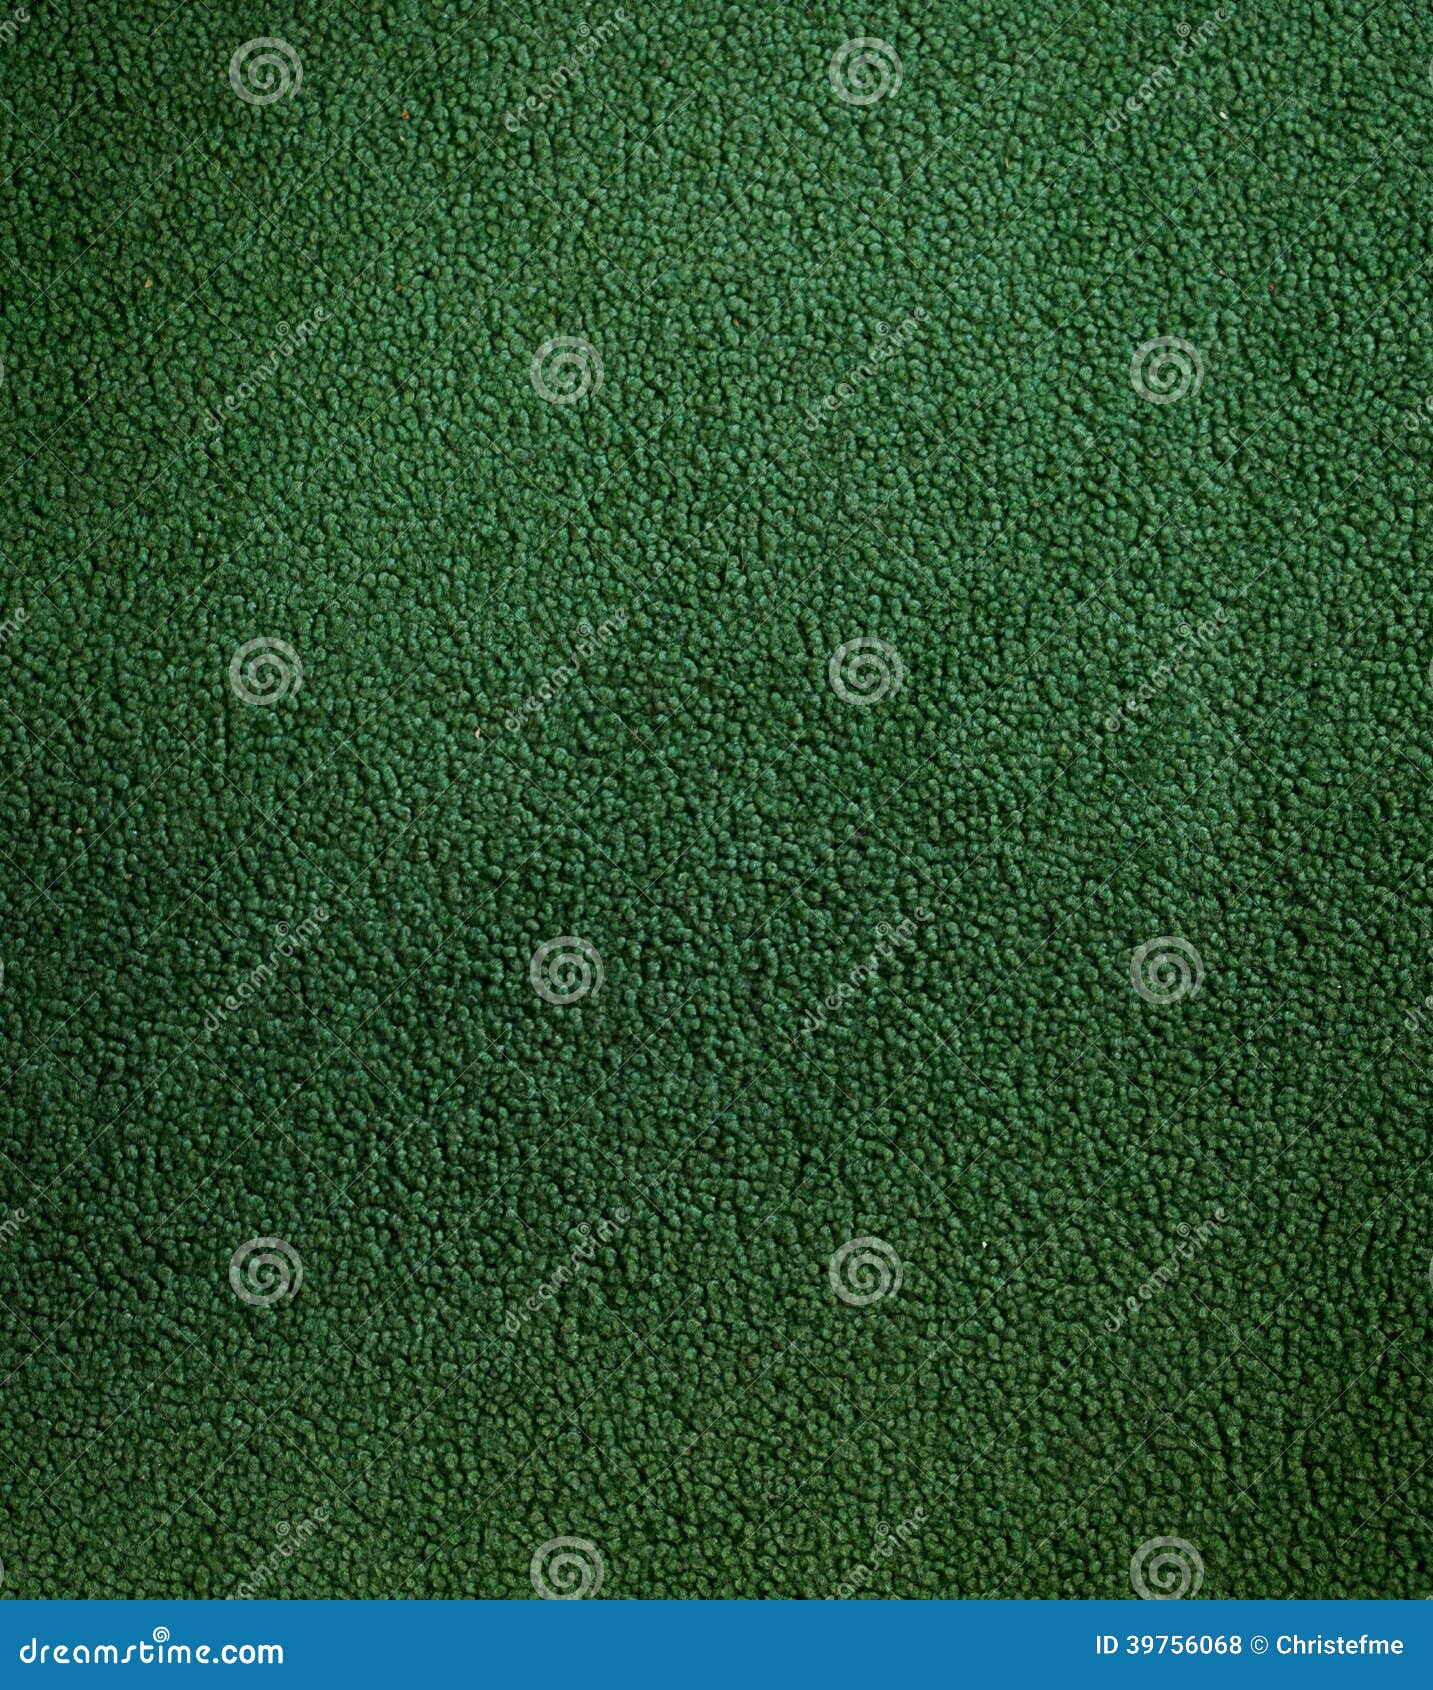 Fondo de textura de alfombra verde desde arriba 3549784 Foto de